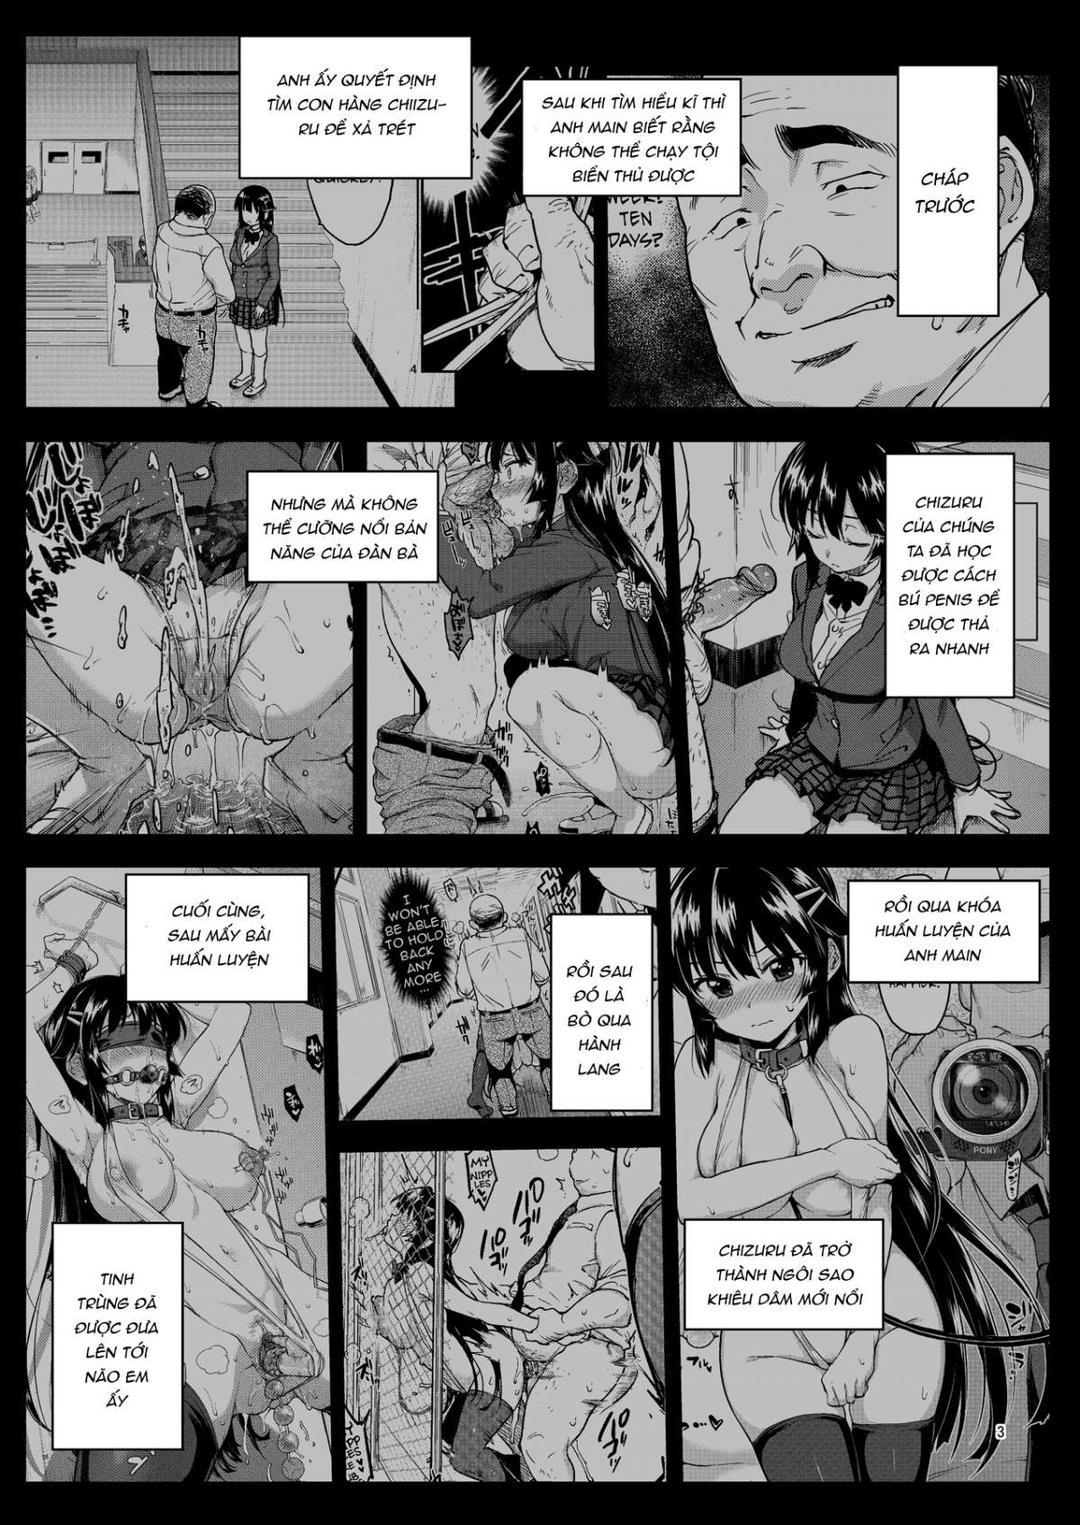 Nhật ký trưởng thành của Chizuru-chan: Vì muốn cứu thầy giáo mà… Chương 3 Trang 3